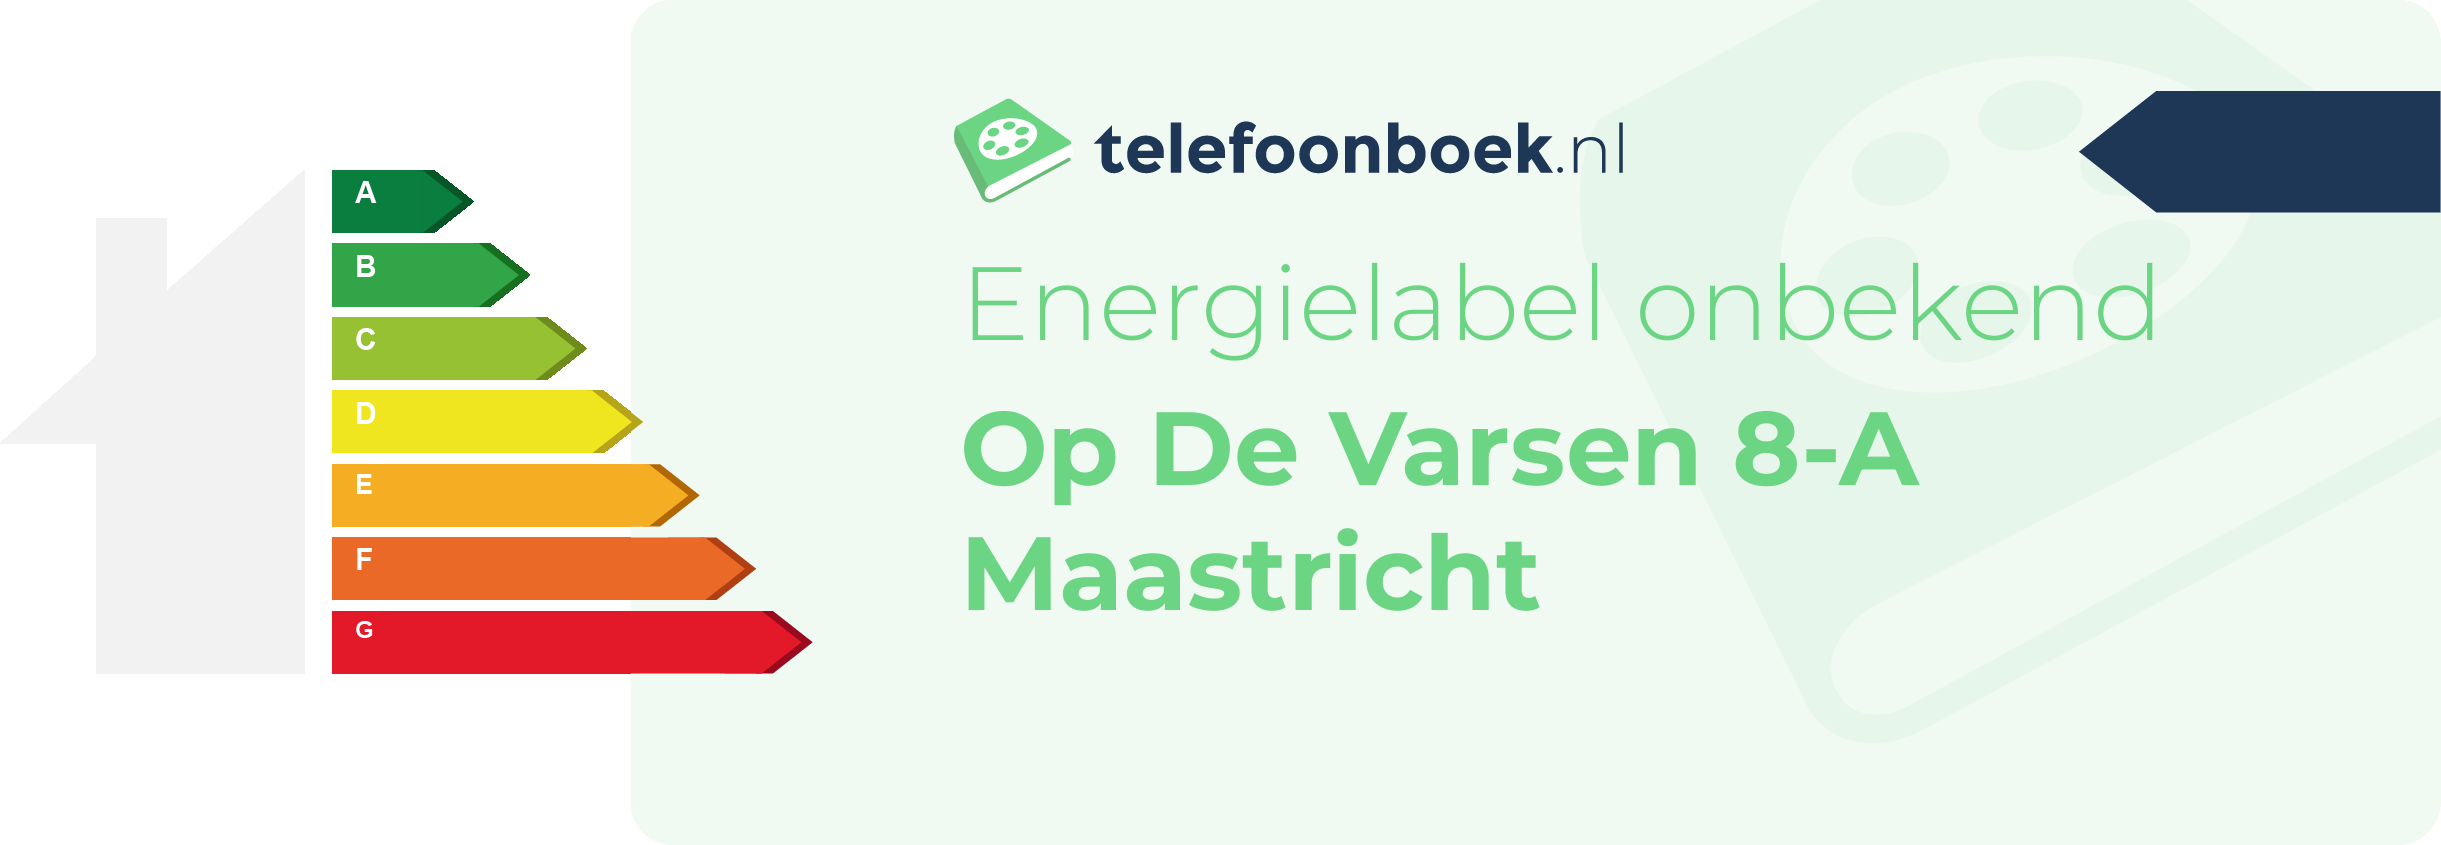 Energielabel Op De Varsen 8-A Maastricht